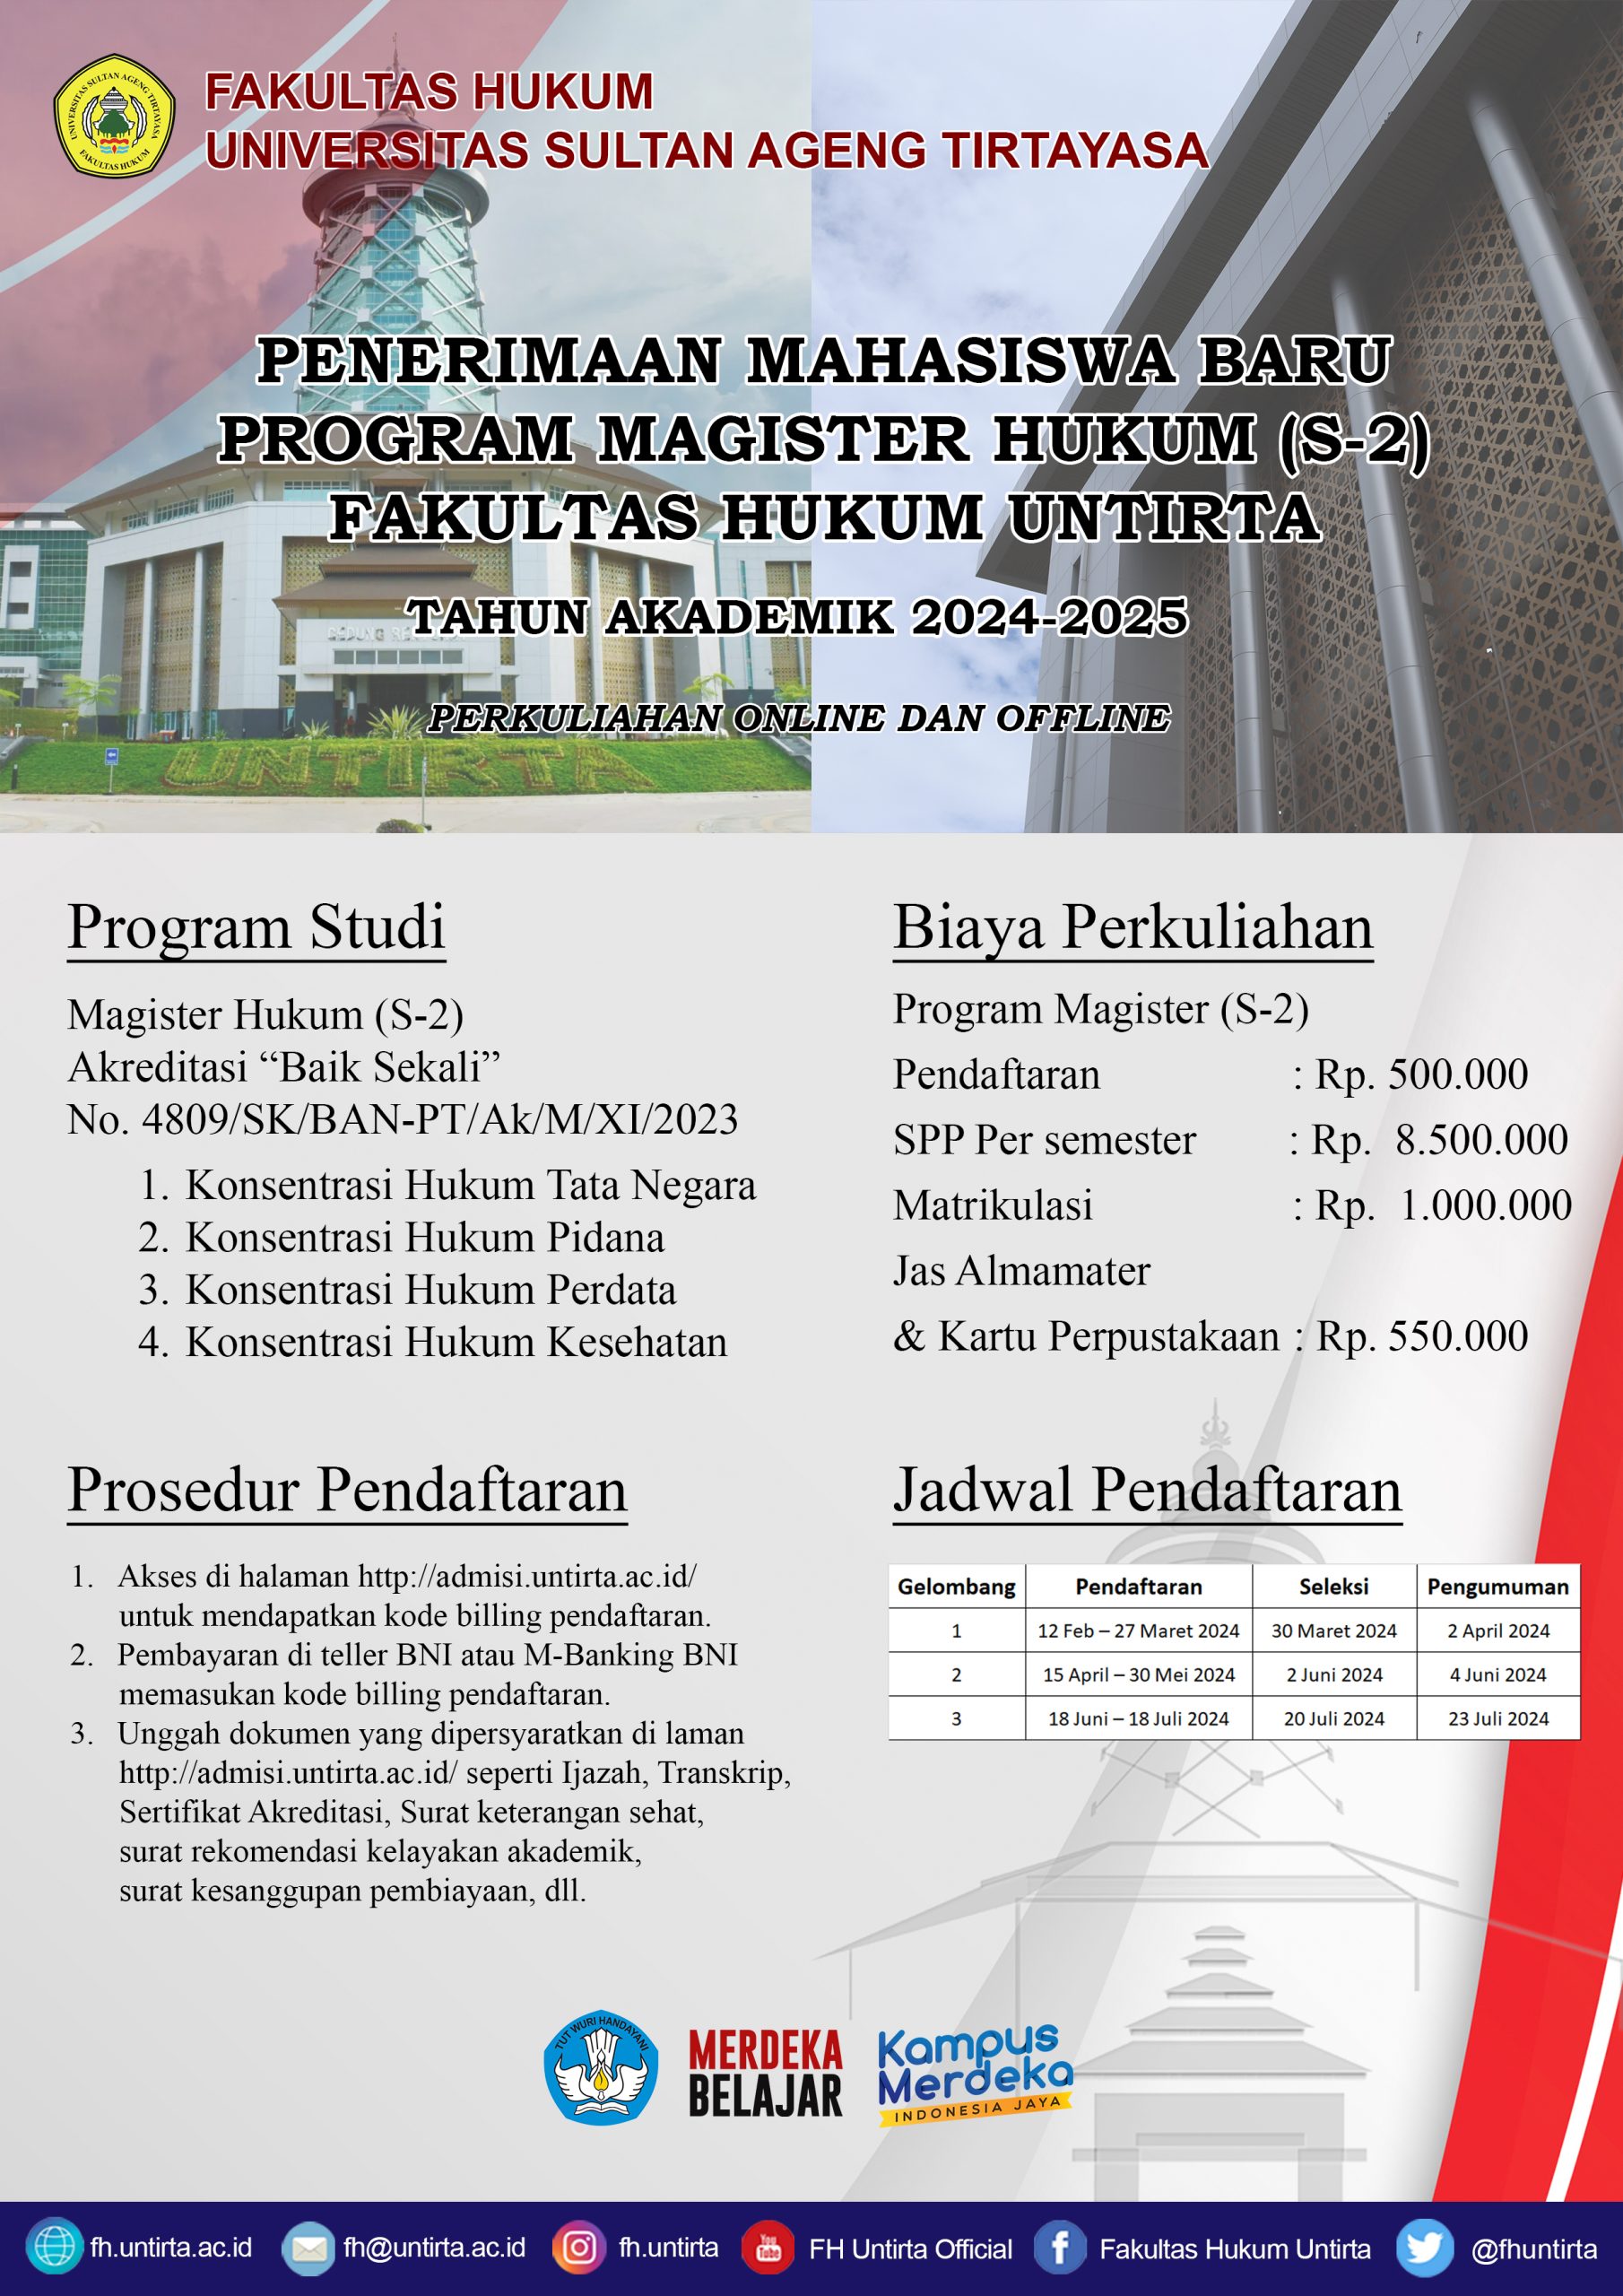 Informasi Penerimaan Mahasiswa Baru Program Magister Hukum (S-2) Fakultas Hukum Untirta T.A. 2024 – 2025